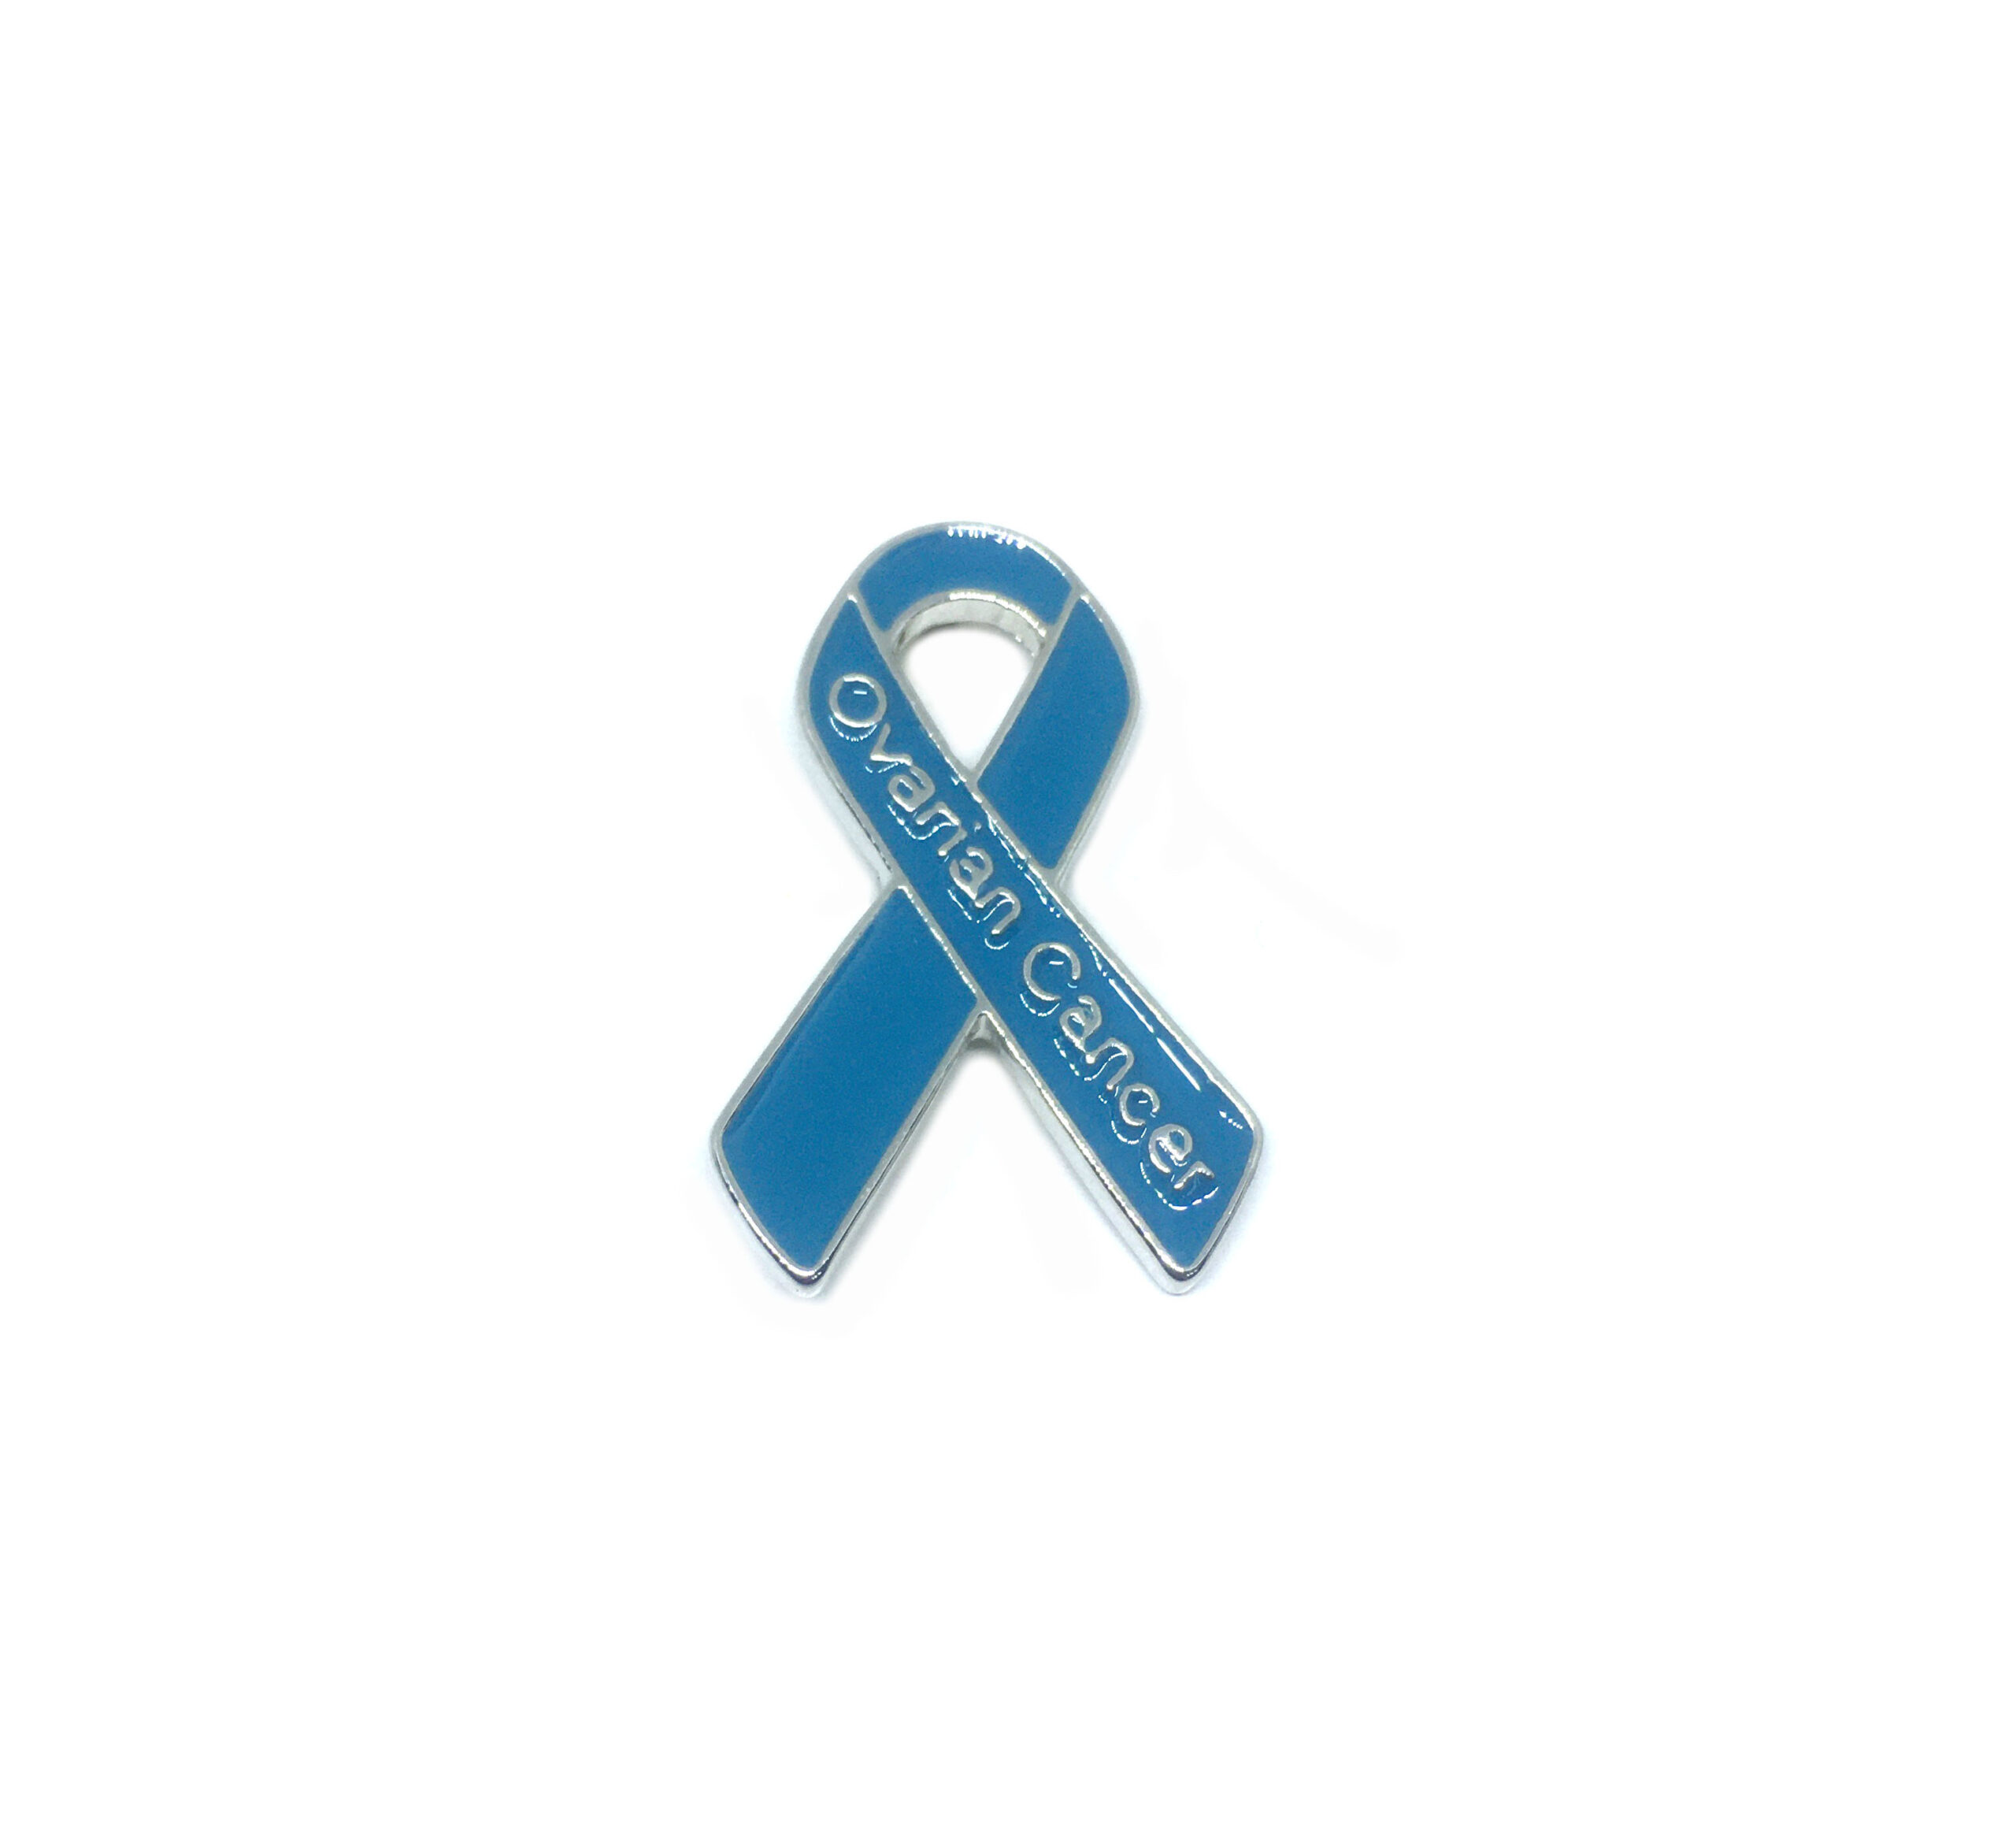 Ovarian Cancer Awareness Pin